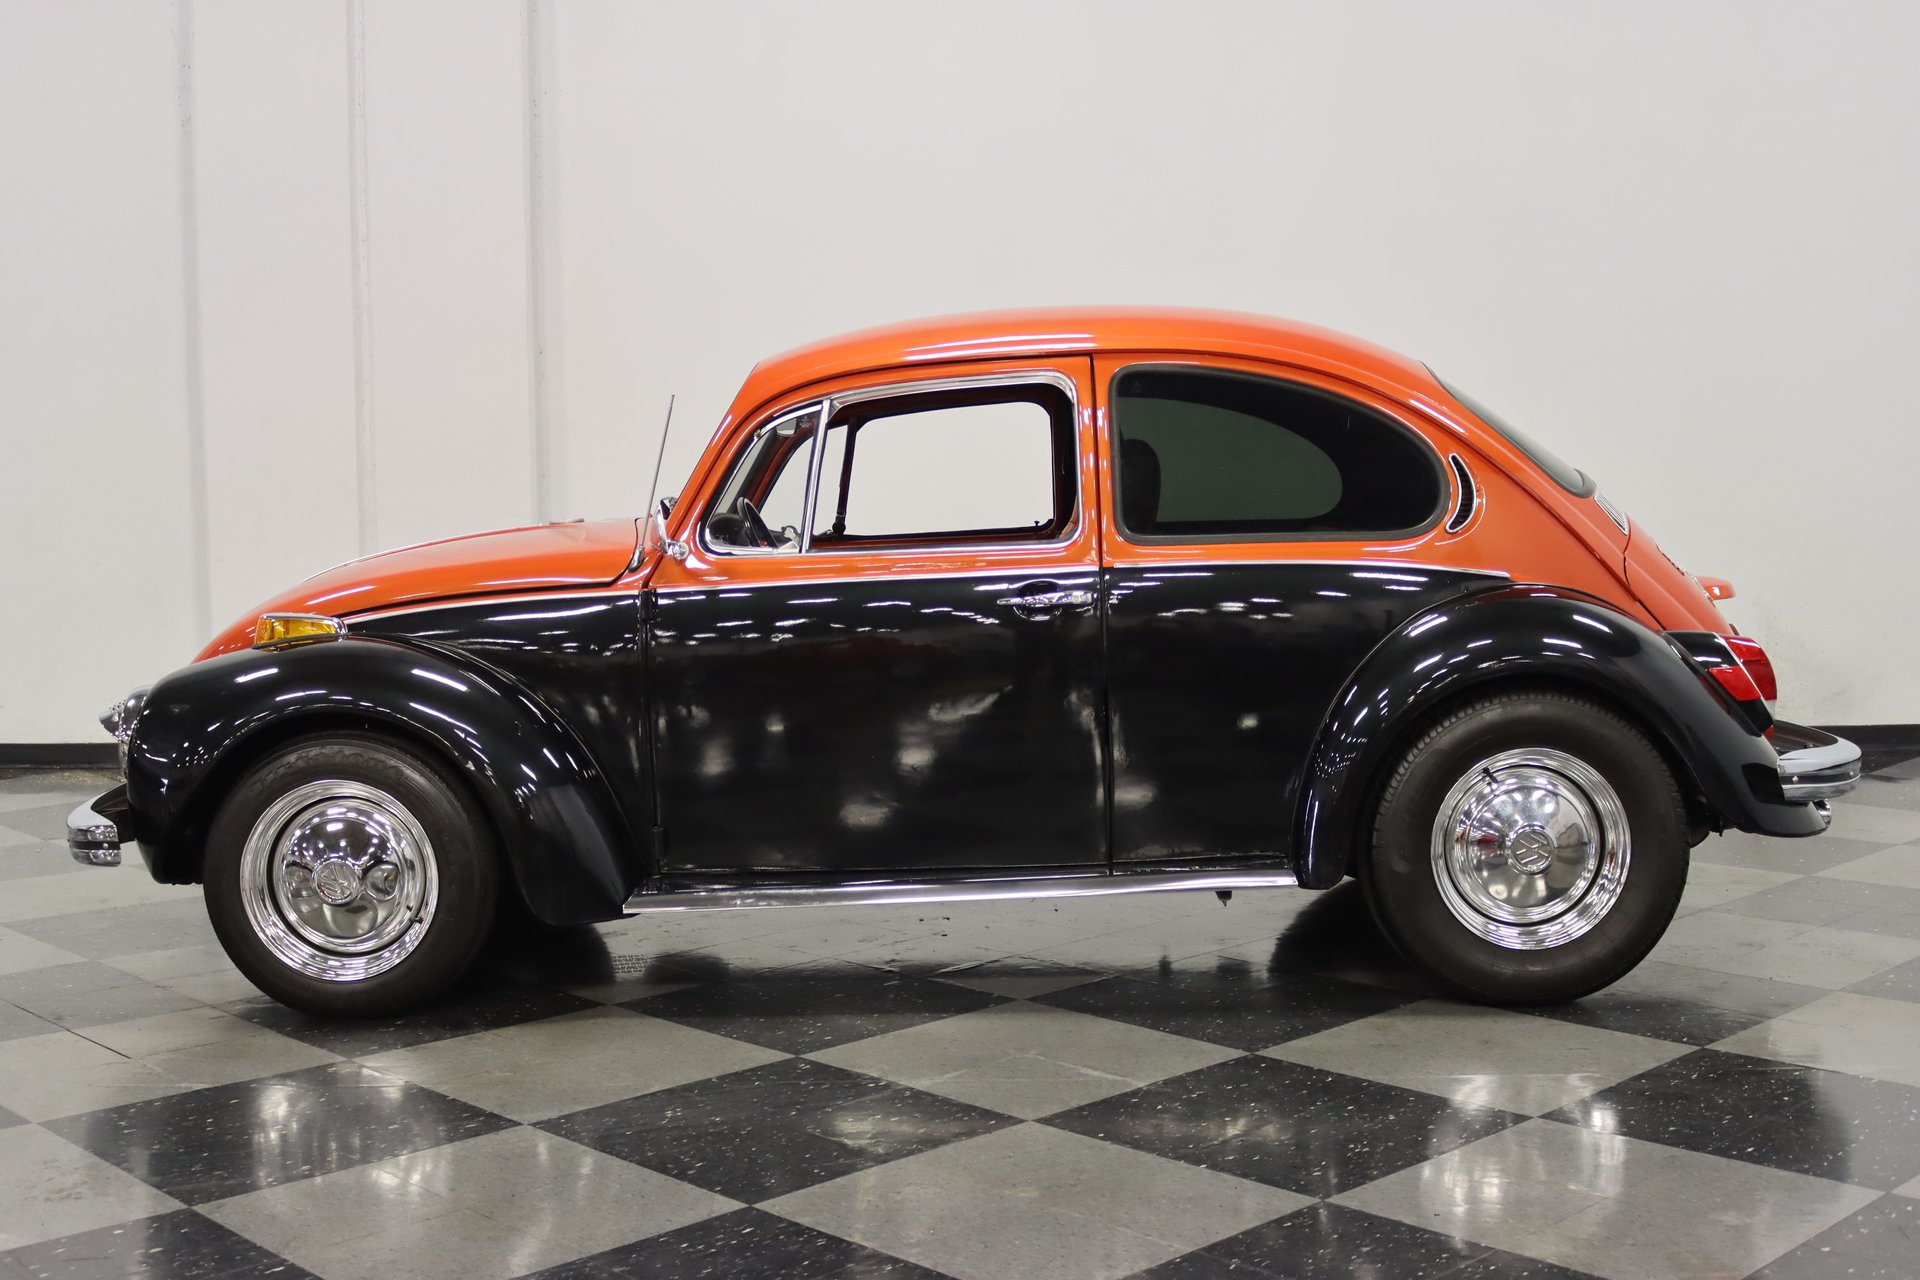 1971 volkswagen beetle